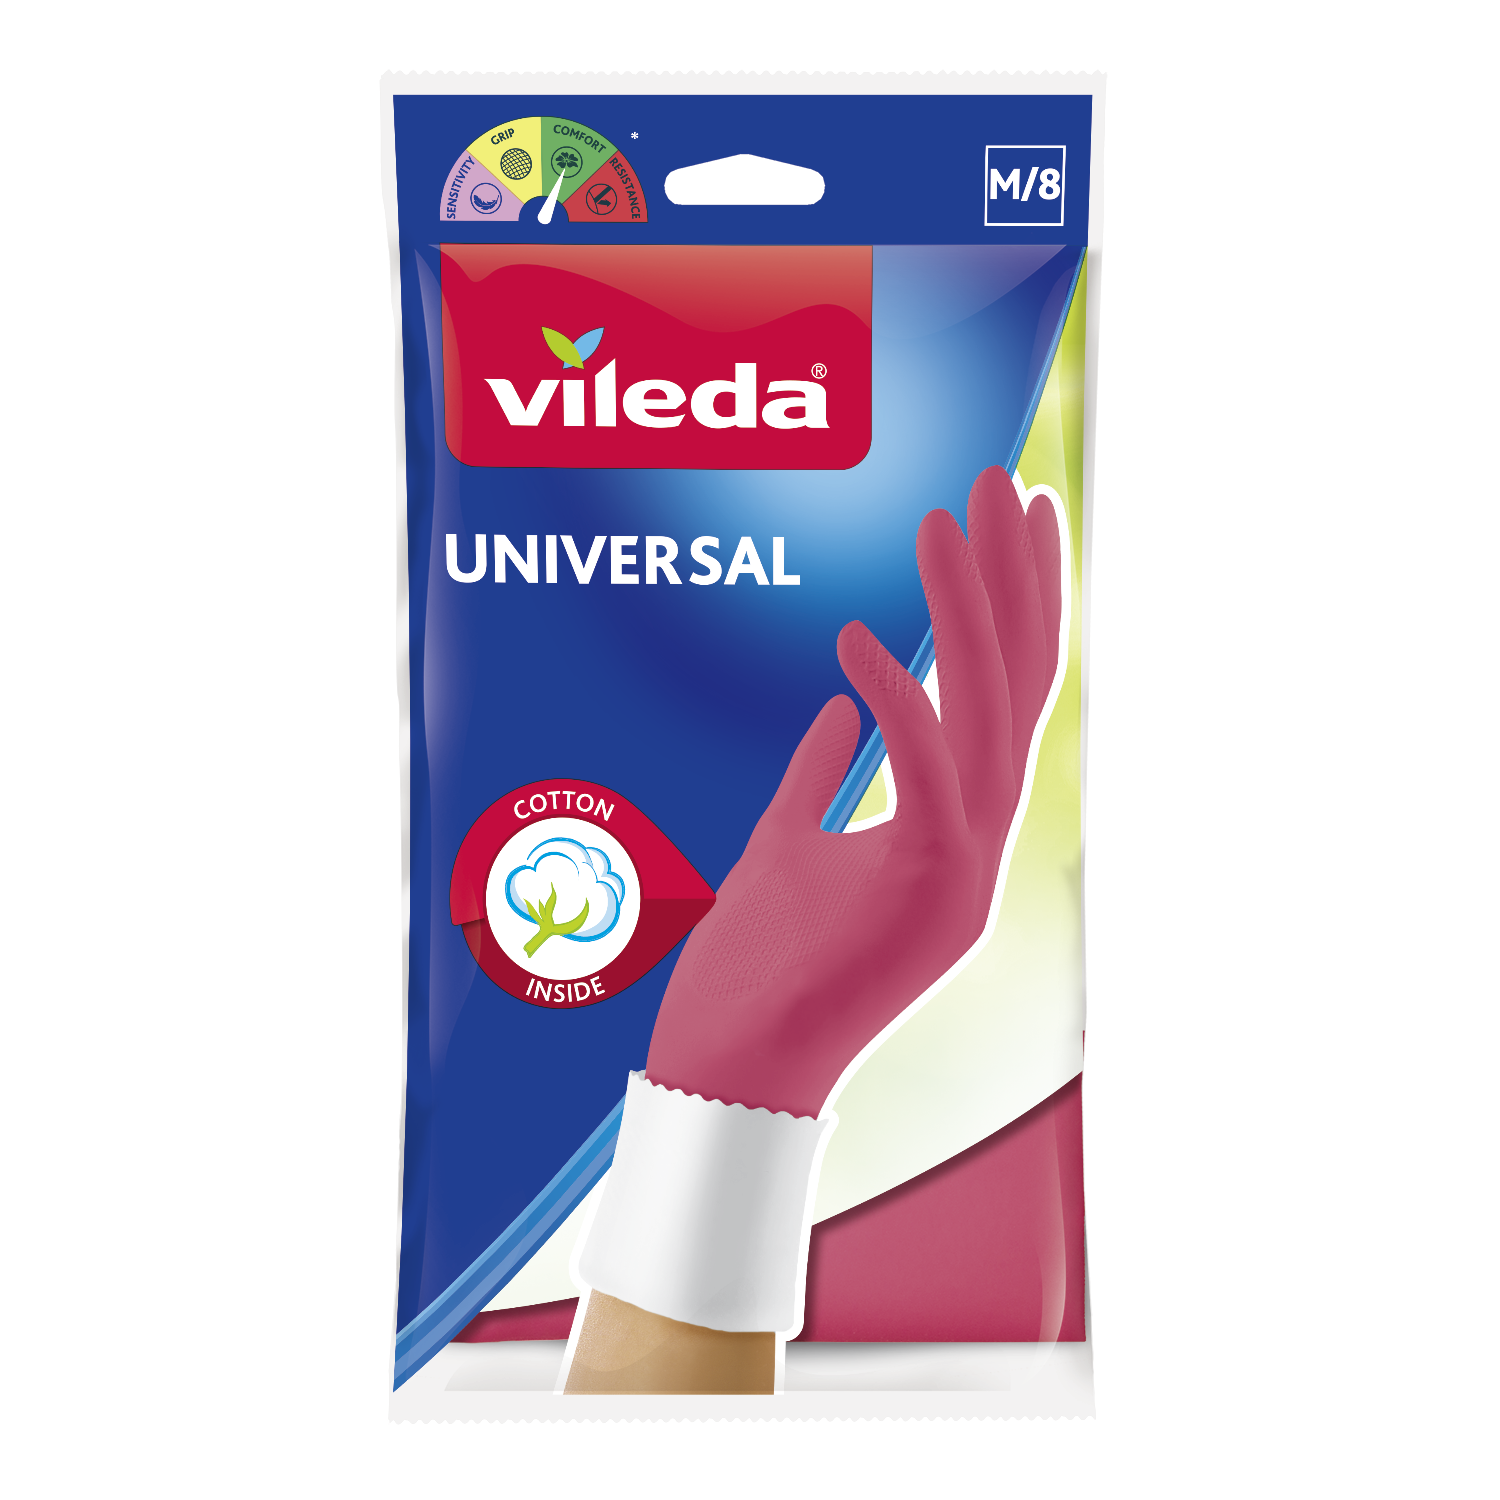 Γάντια Οικιακής Χρήσης Universal Medium Vileda (1 τεμ)